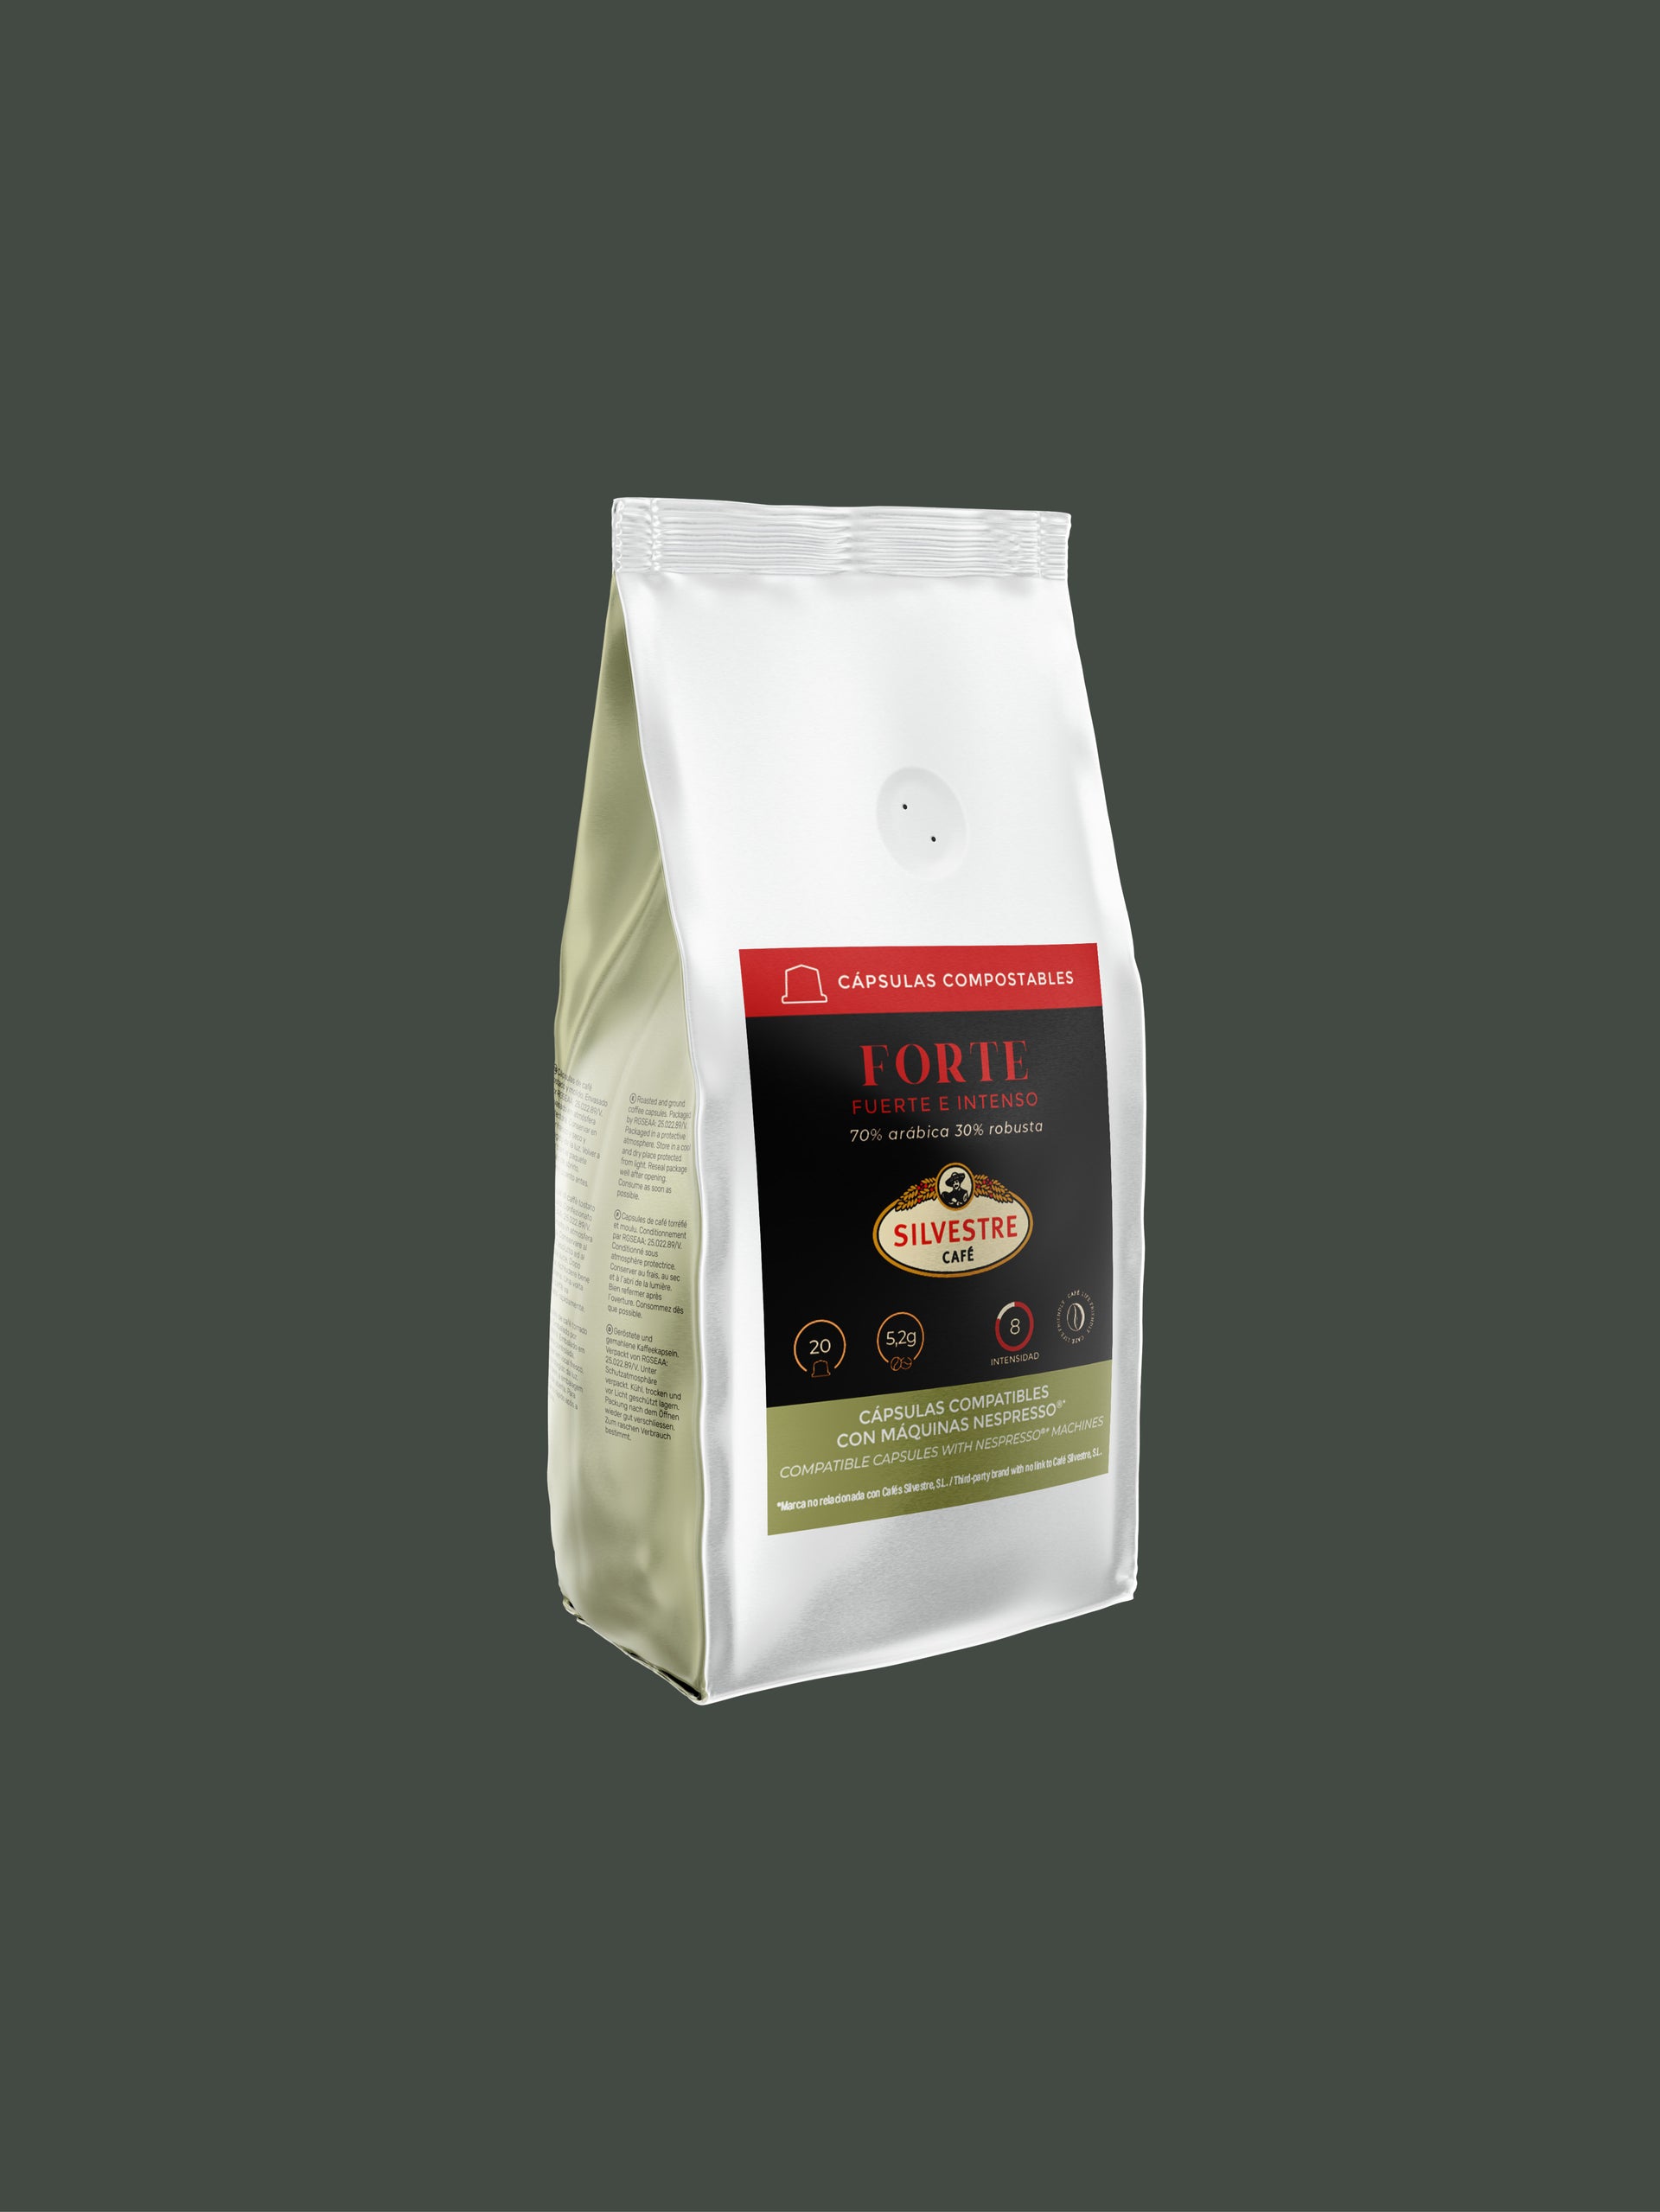 Forte - Capsules Compatibles Nespresso Compostables - Café Silvestre